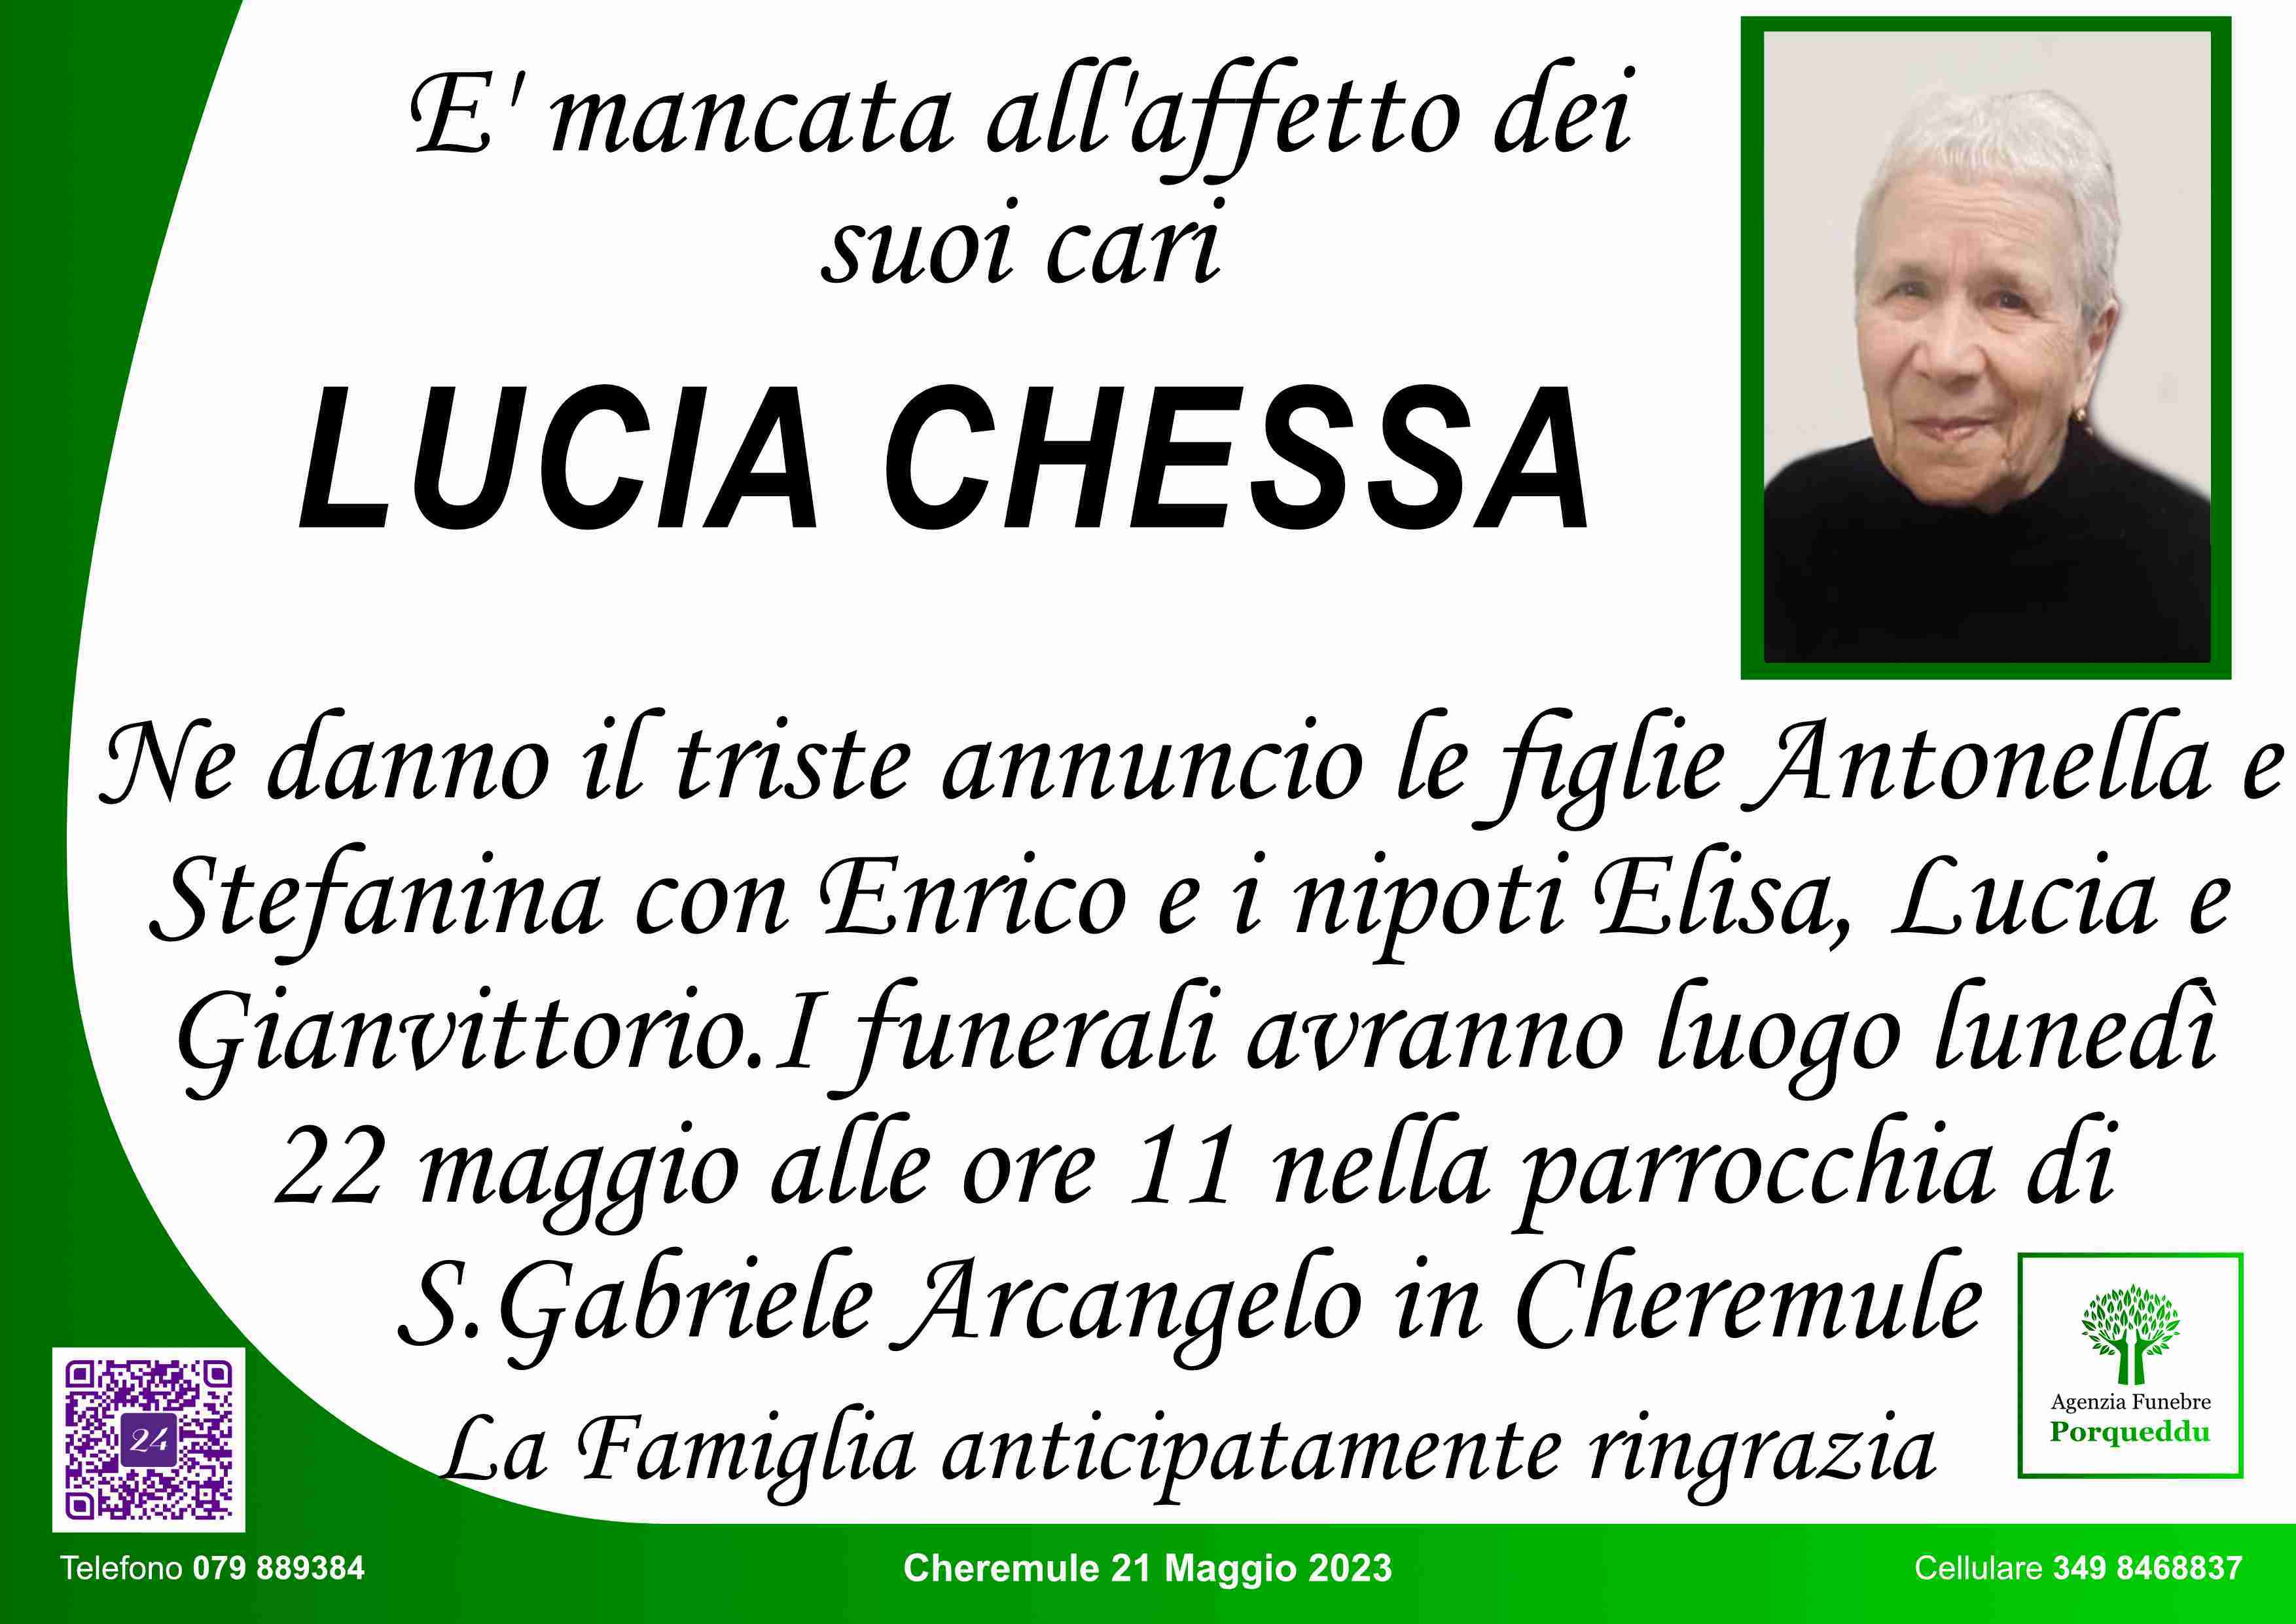 Lucia Chessa